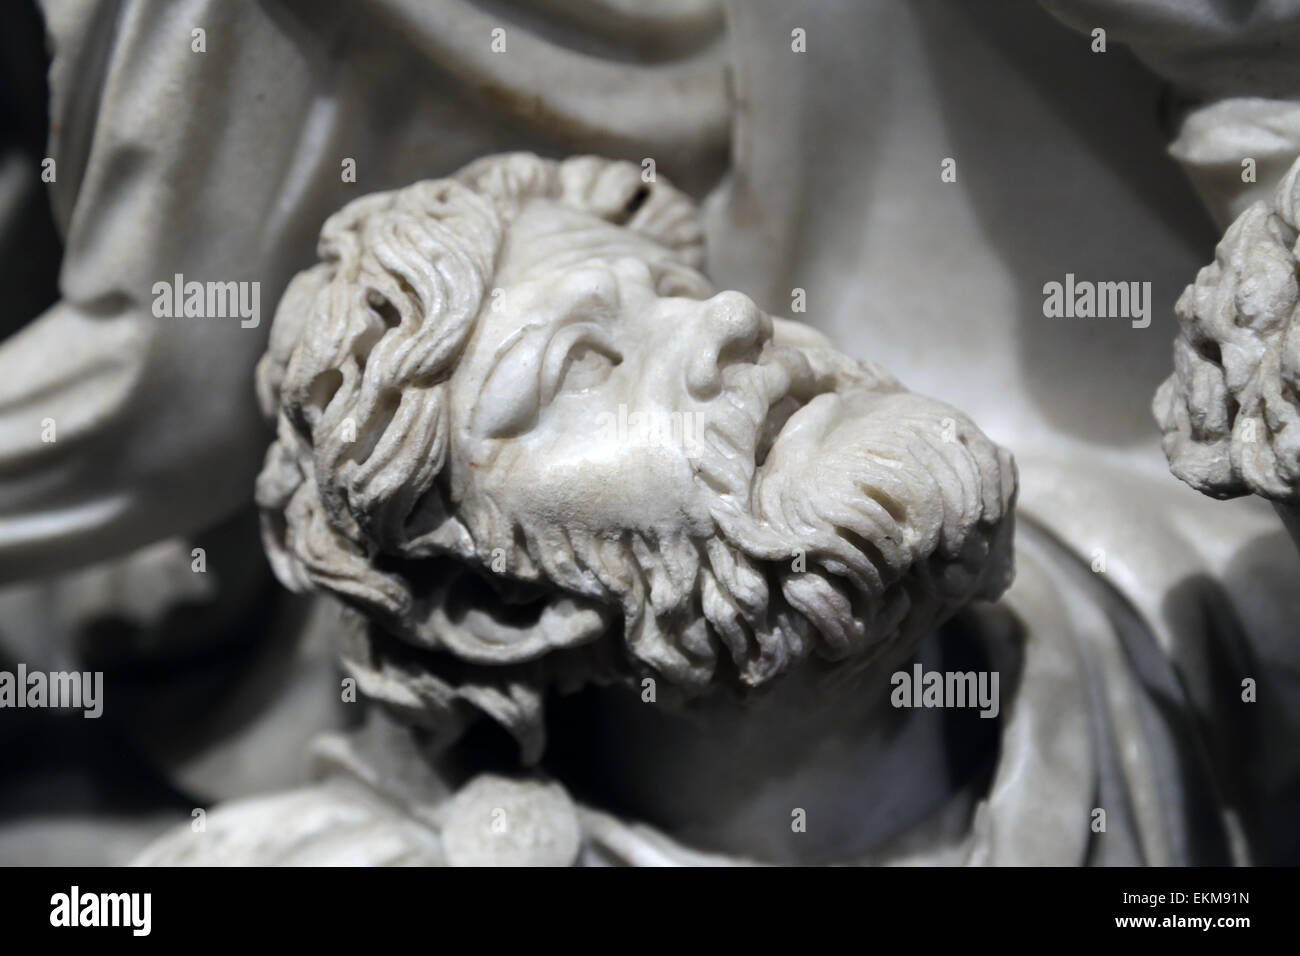 Ludovisi Schlacht Sarkophag. 3. C. Roman. Kampfszene zwischen Römern und Goten. Detail der Barbarenkrieger. Altemps Palast Stockfoto